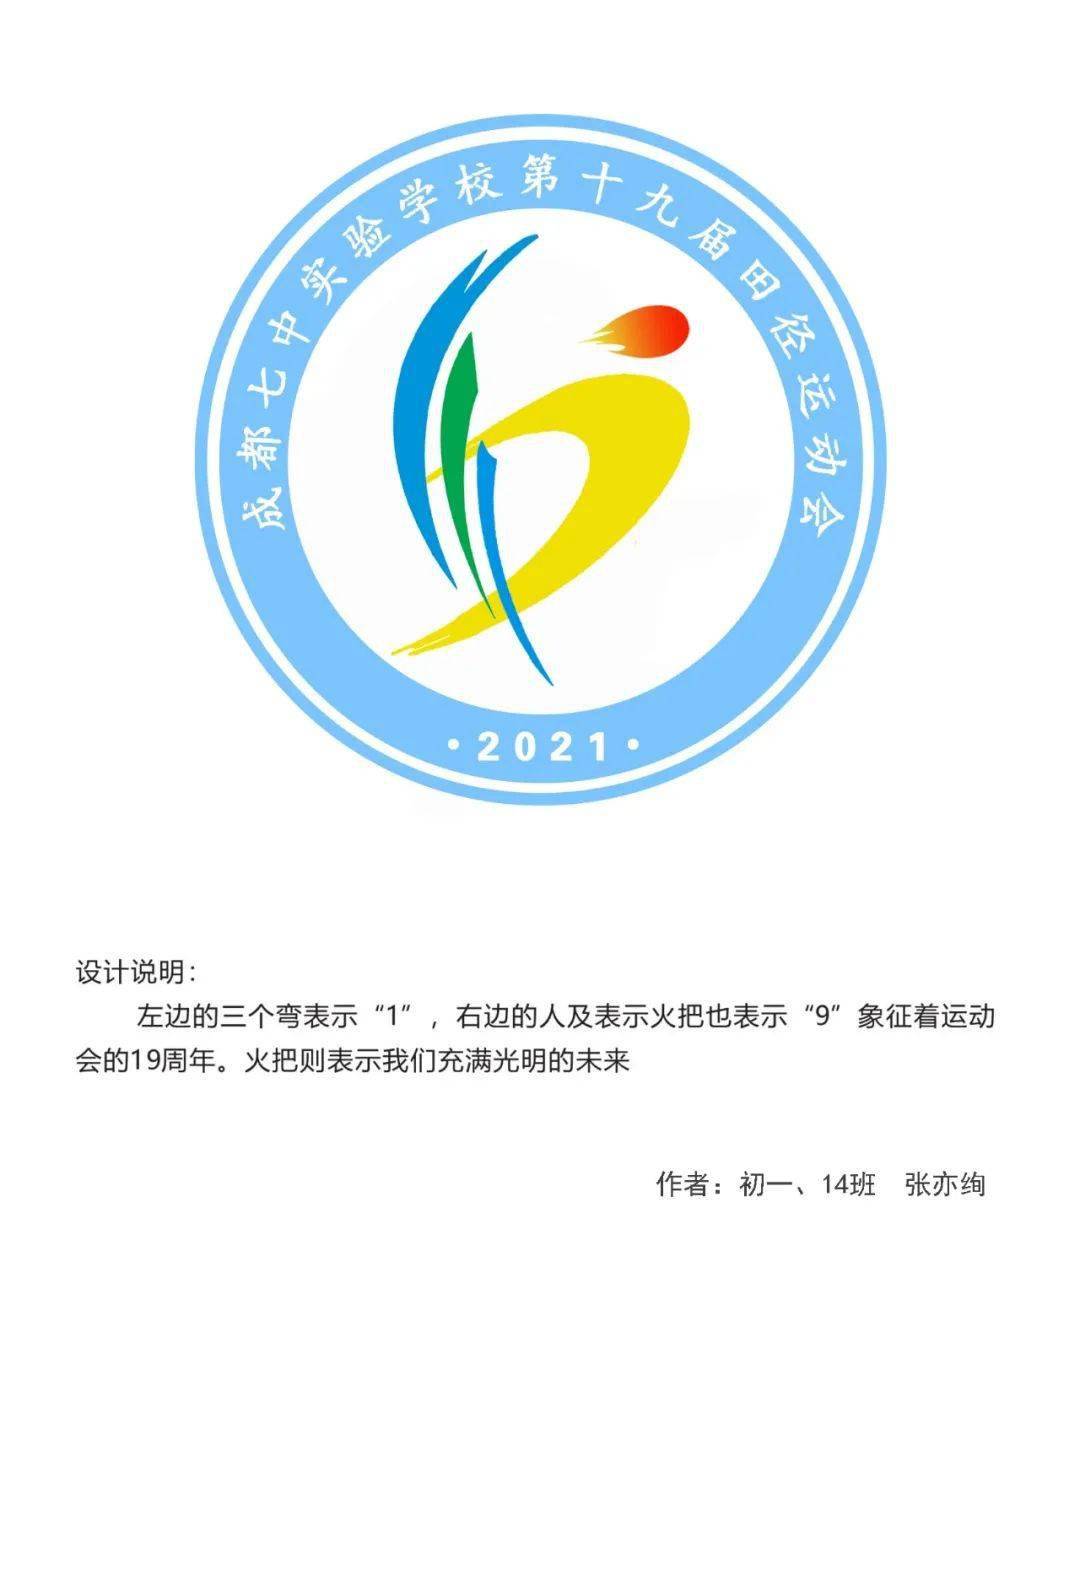 会徽投票 2021"冠城杯"体育文化节暨第19届田径运动会入围会徽投票